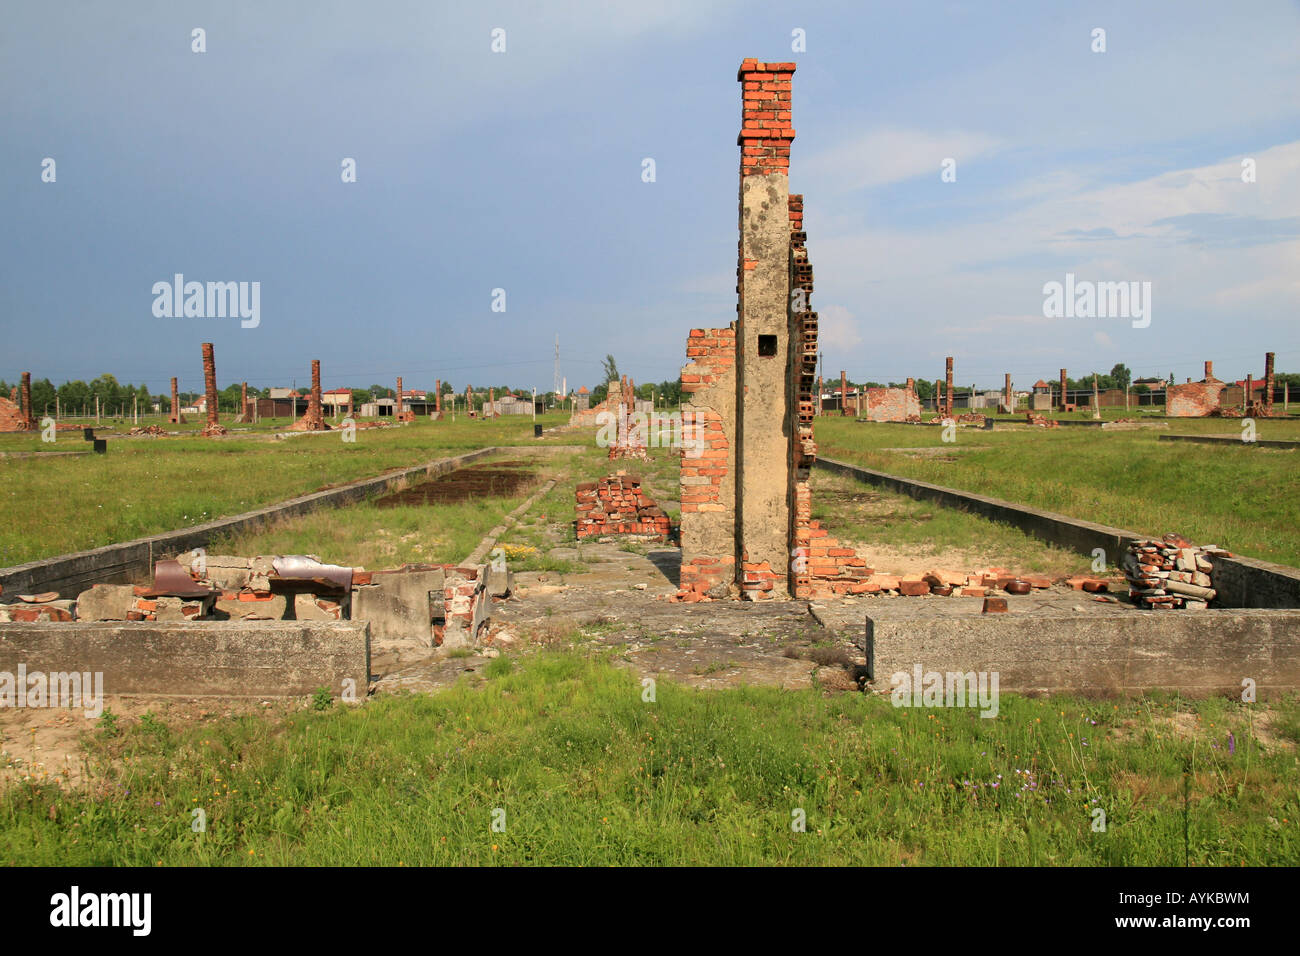 Dans les ruines de cheminée de restes d'une cabane en bois détruits dans l'ancien camp de concentration Nazi à Auschwitz Birkenau. Banque D'Images